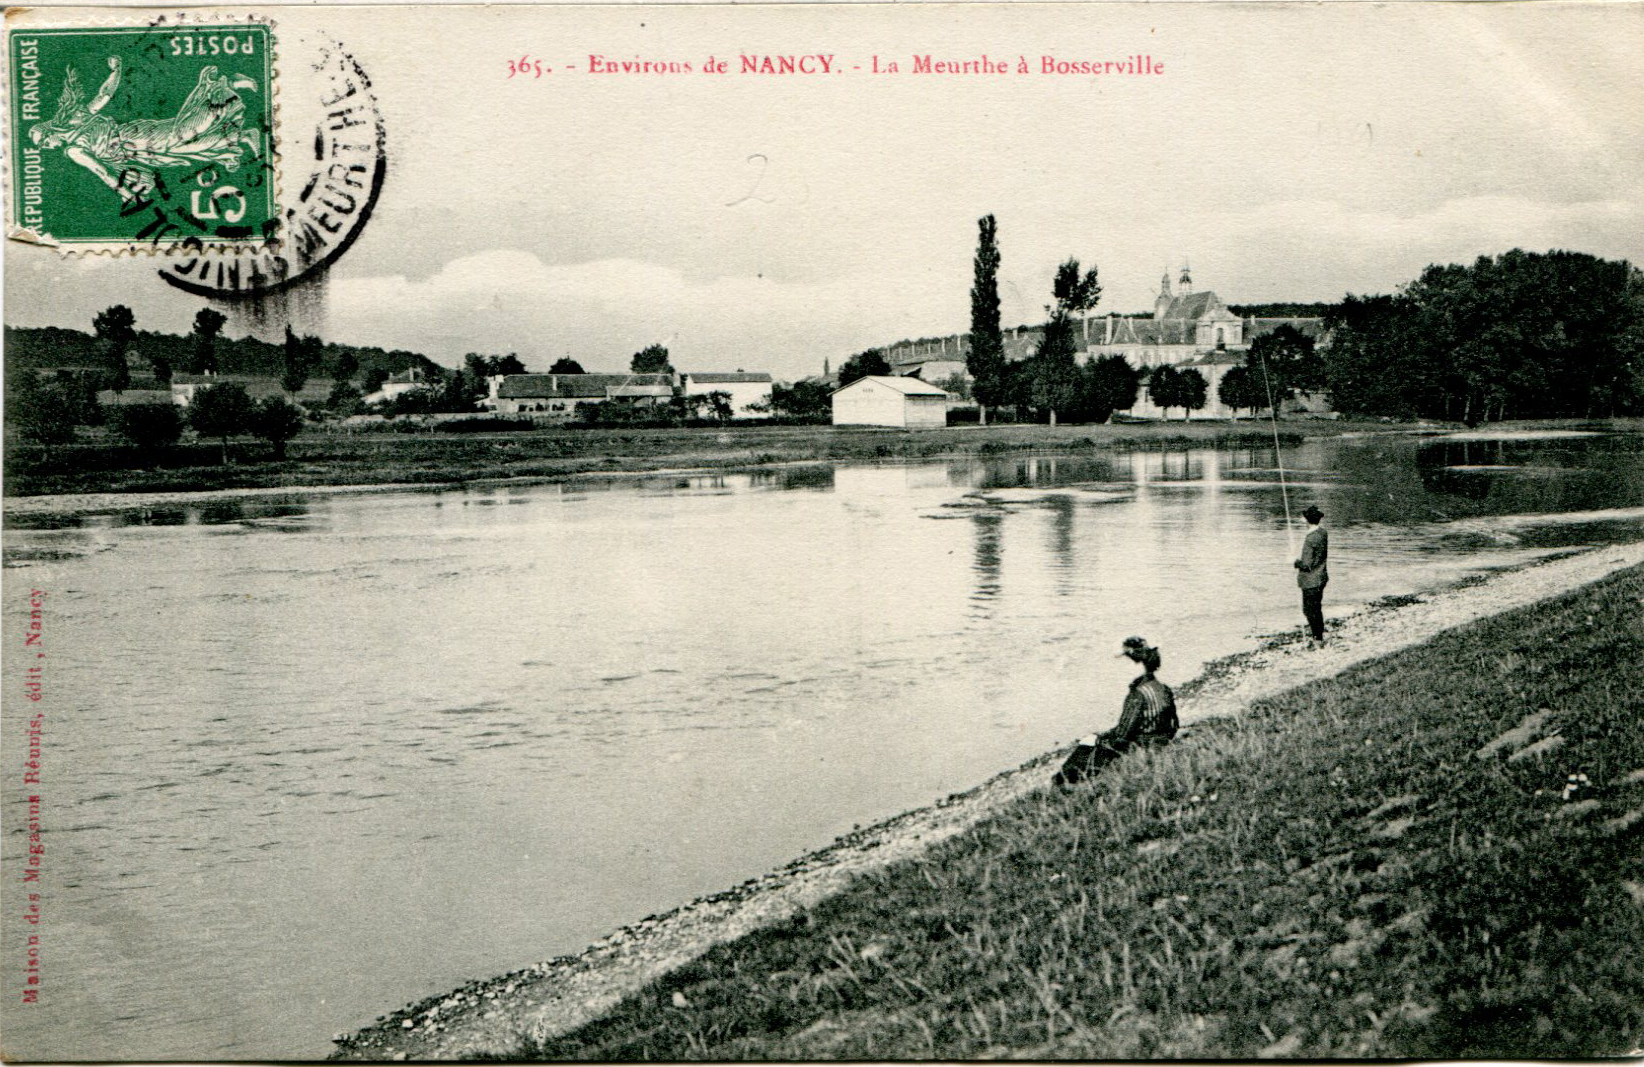 La Meurthe